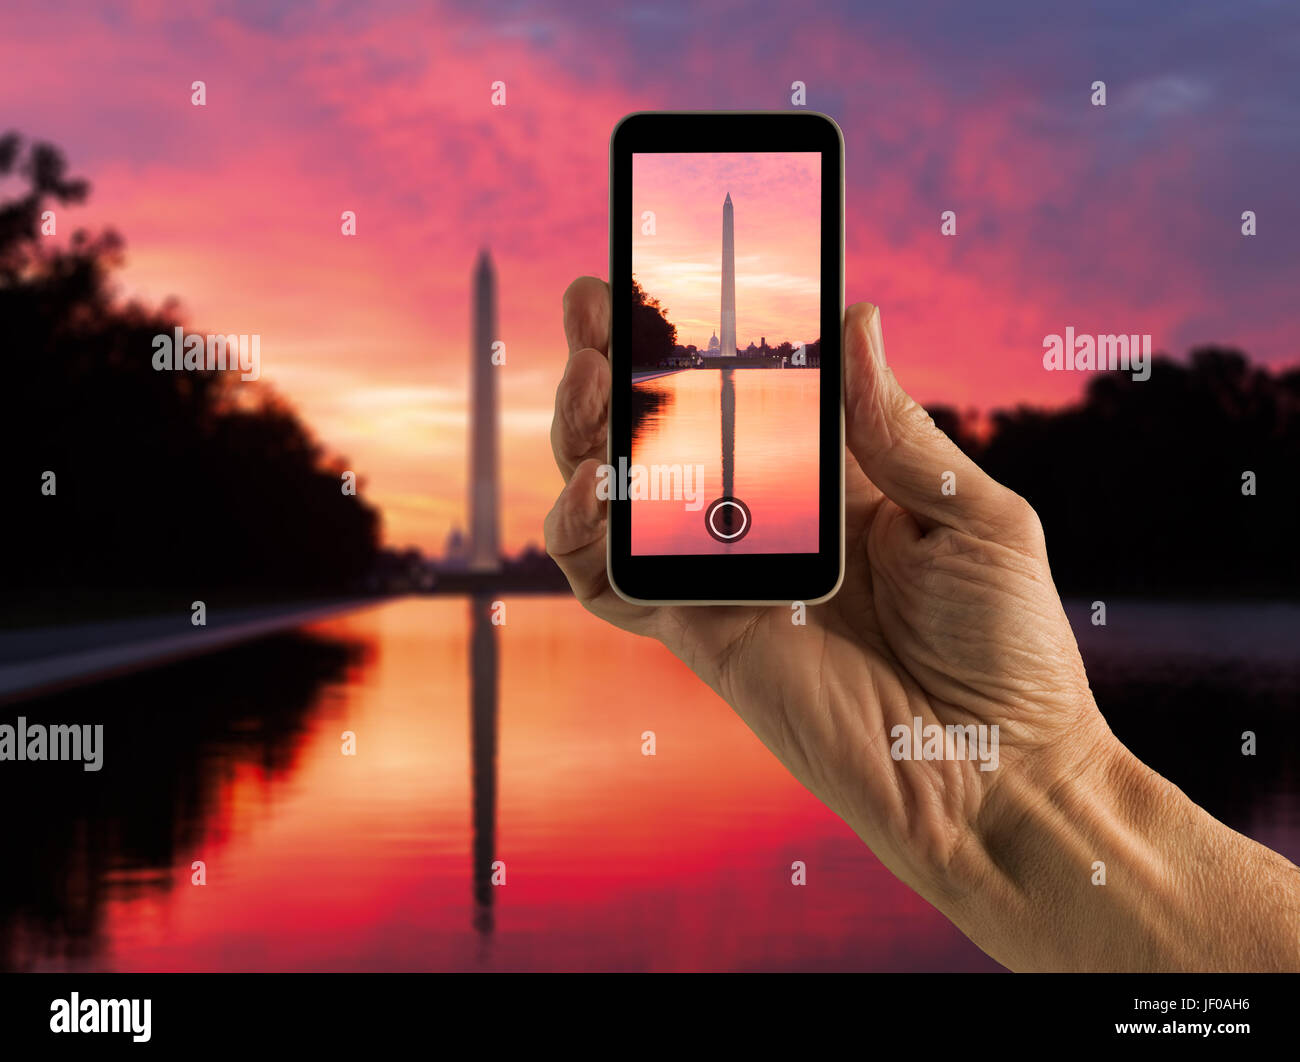 Snapshot of Washington Monument at sunrise Stock Photo